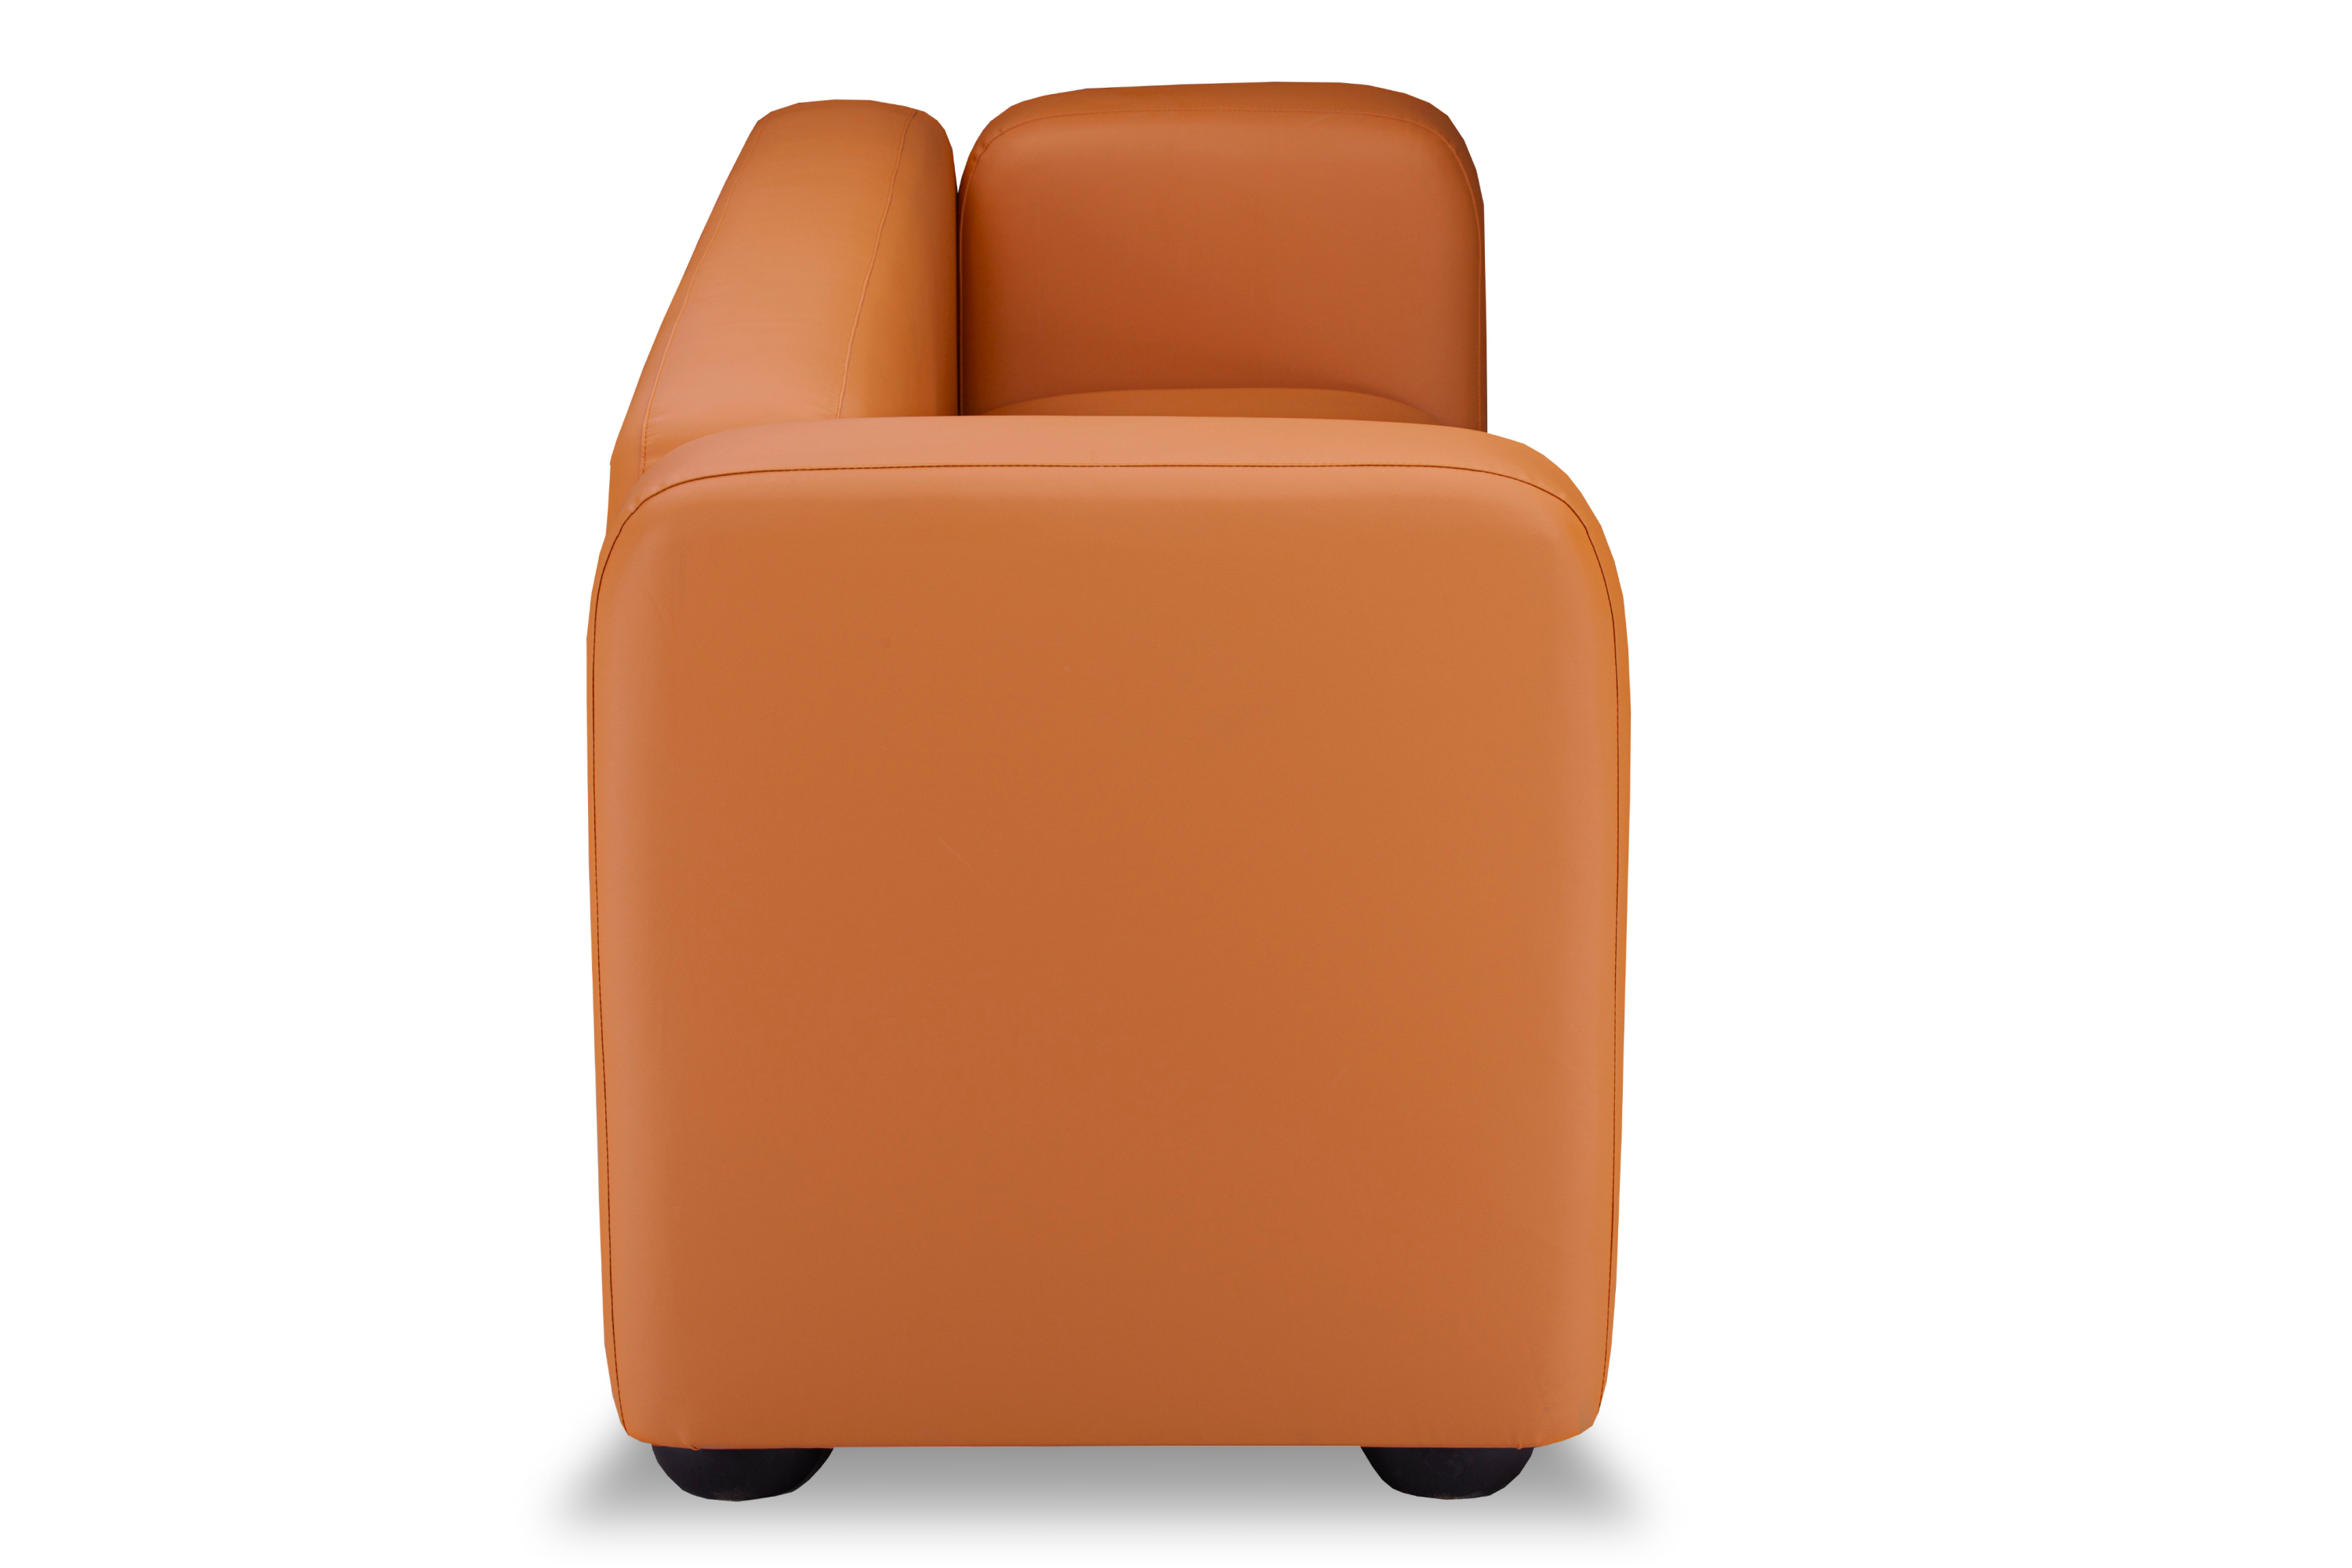 Фото Квадрато трехместный диван экокожа Санторини дарк оранж 5